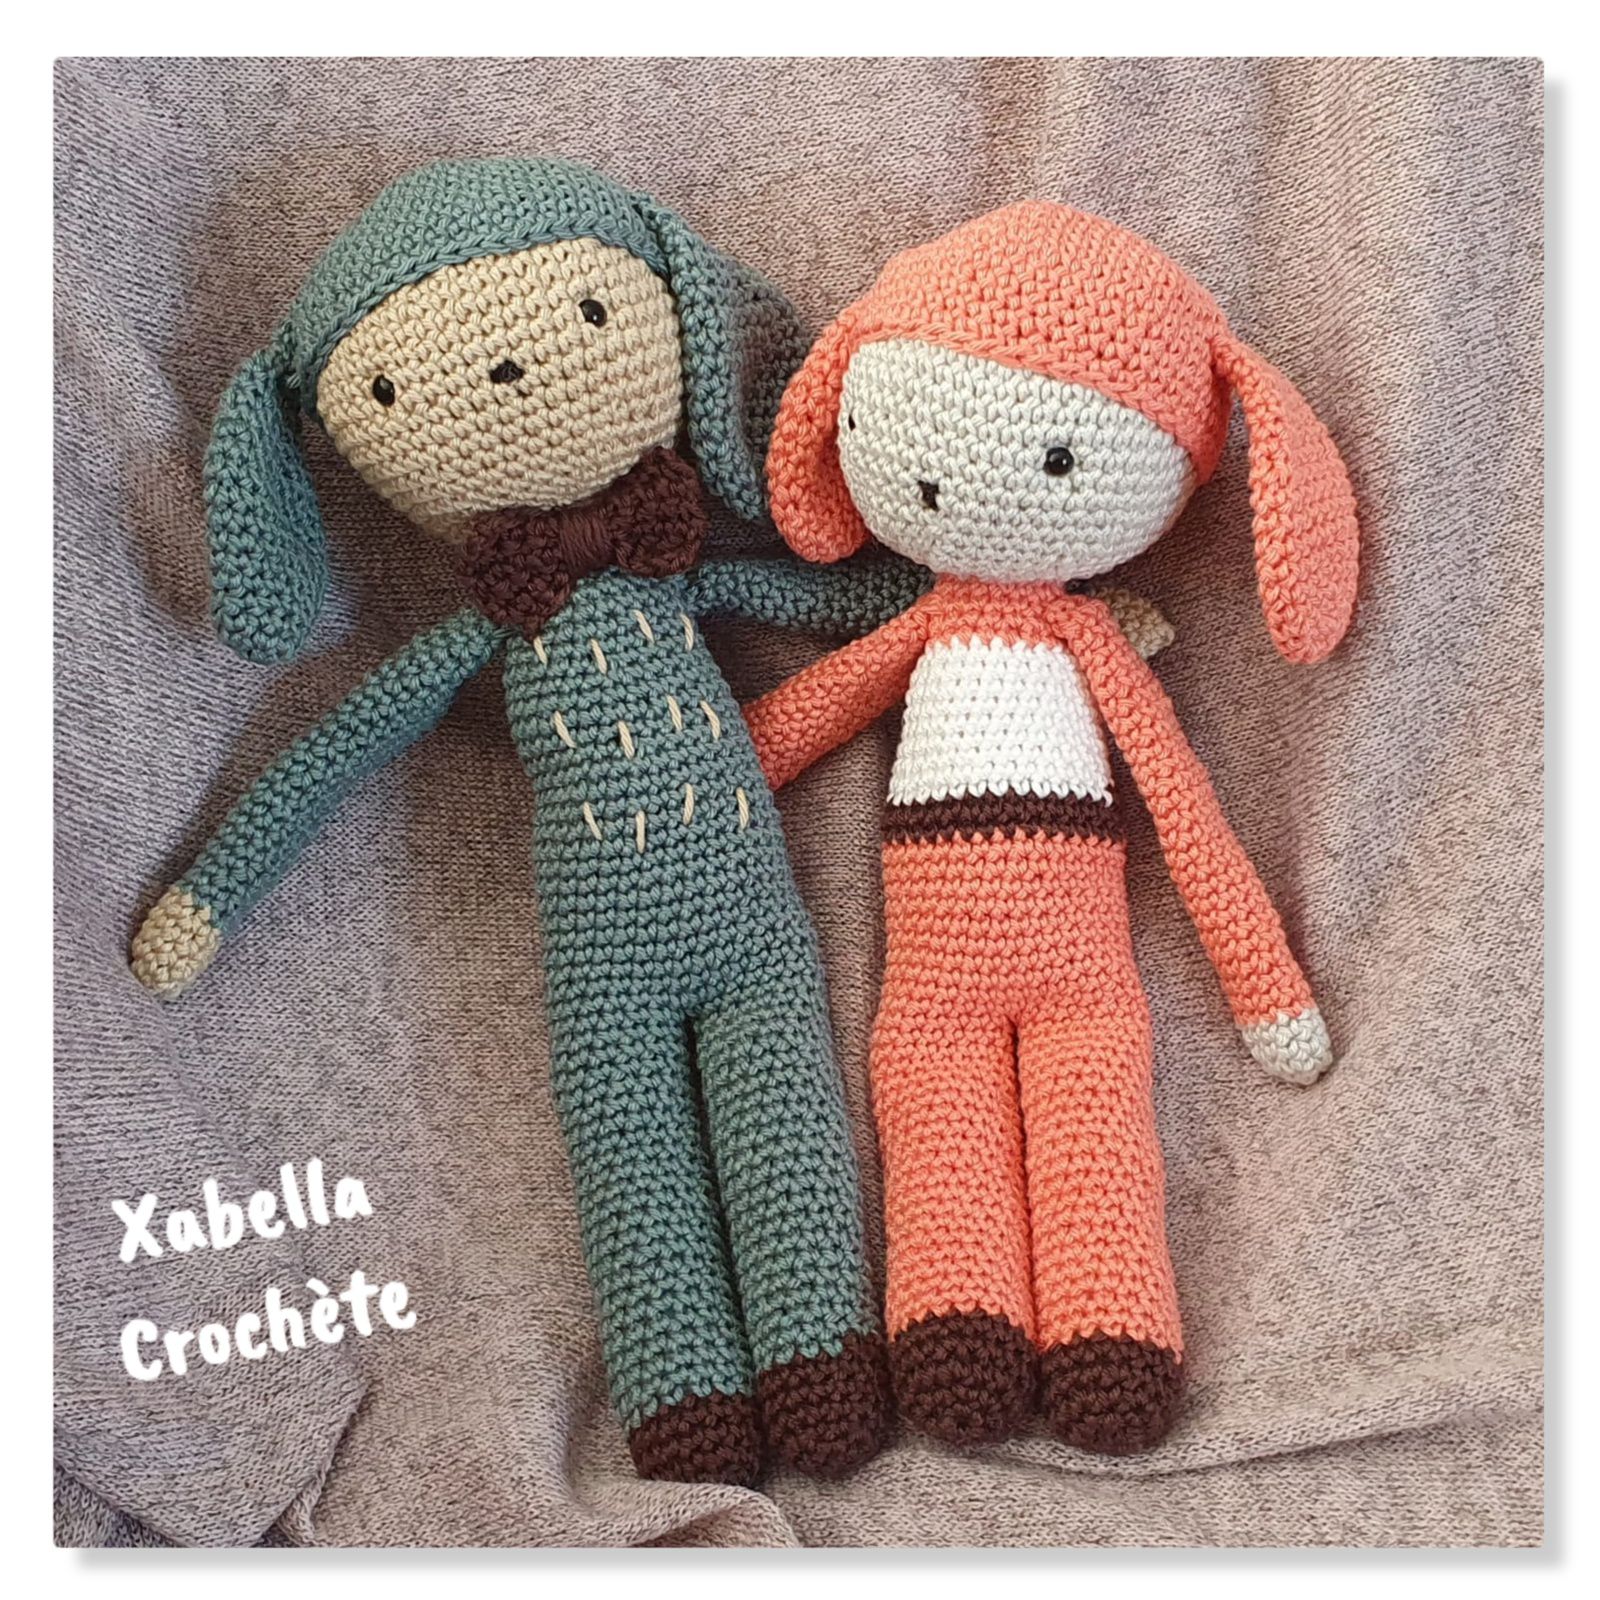 Pochette pour l'infirmière parfaite - Xabella tricote, coud et brode